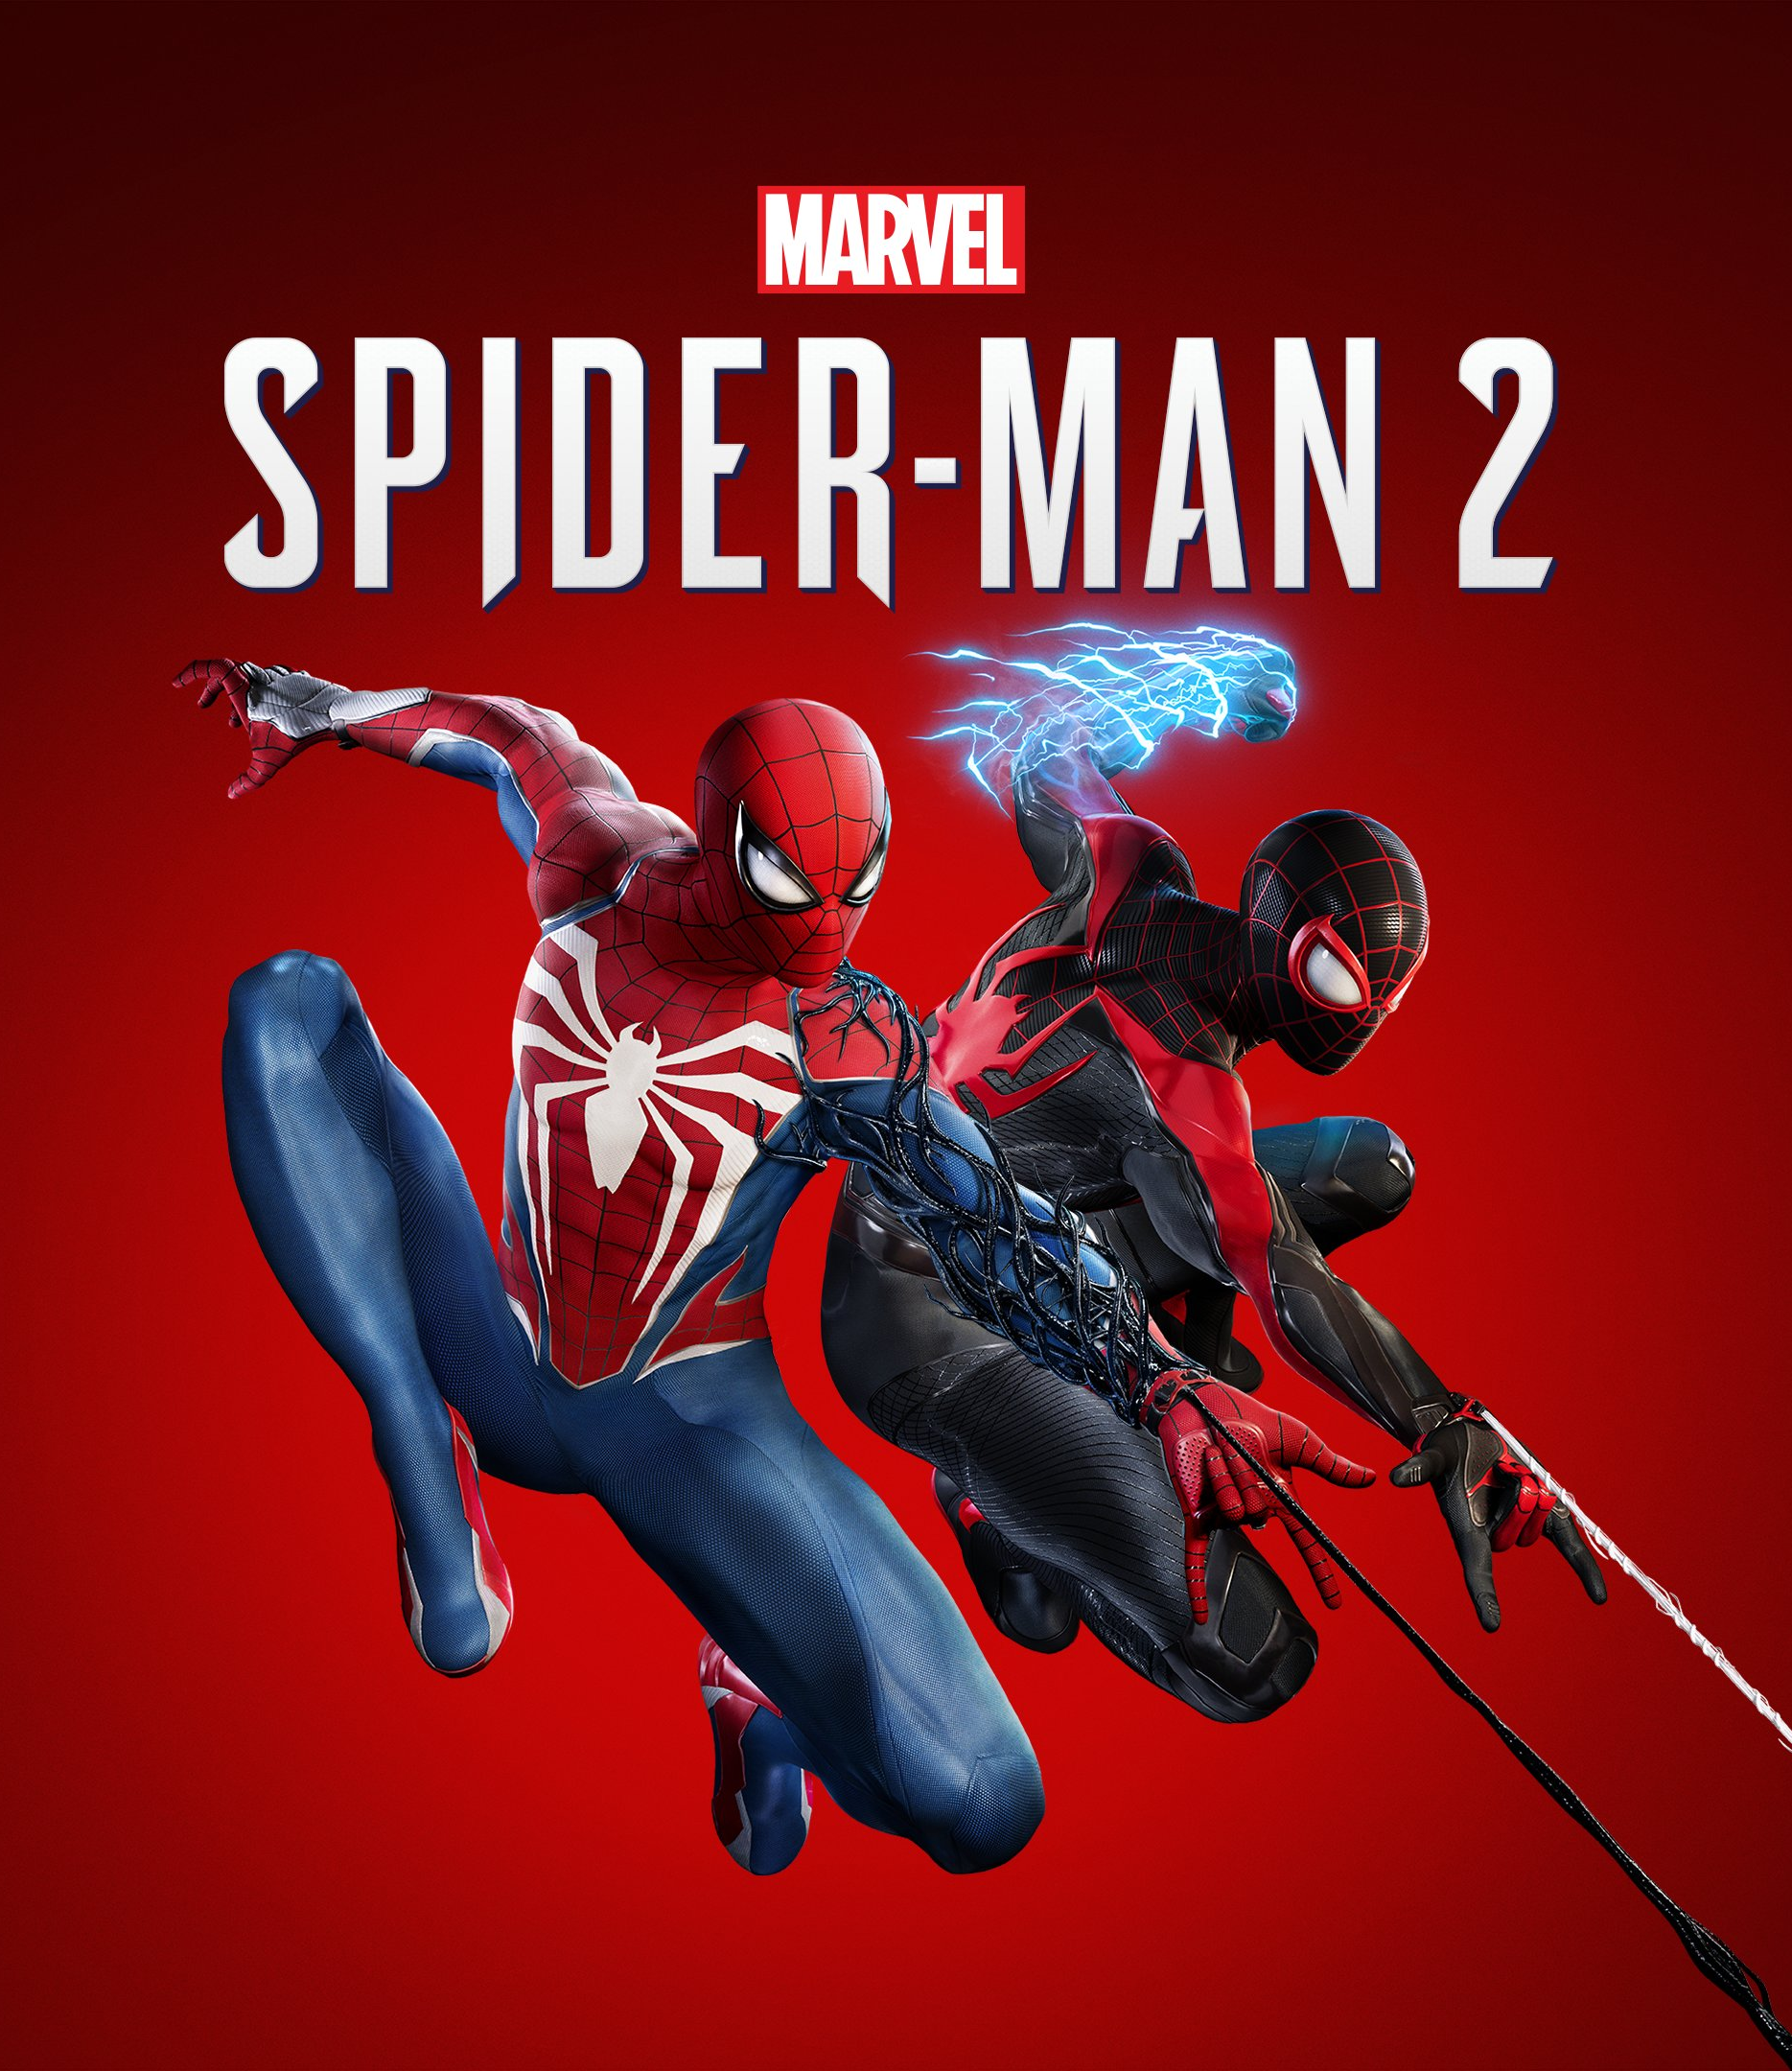 Spider-Man 2 Super Mario Bros. Wonder: Spider-Man 2 on PS5, Super